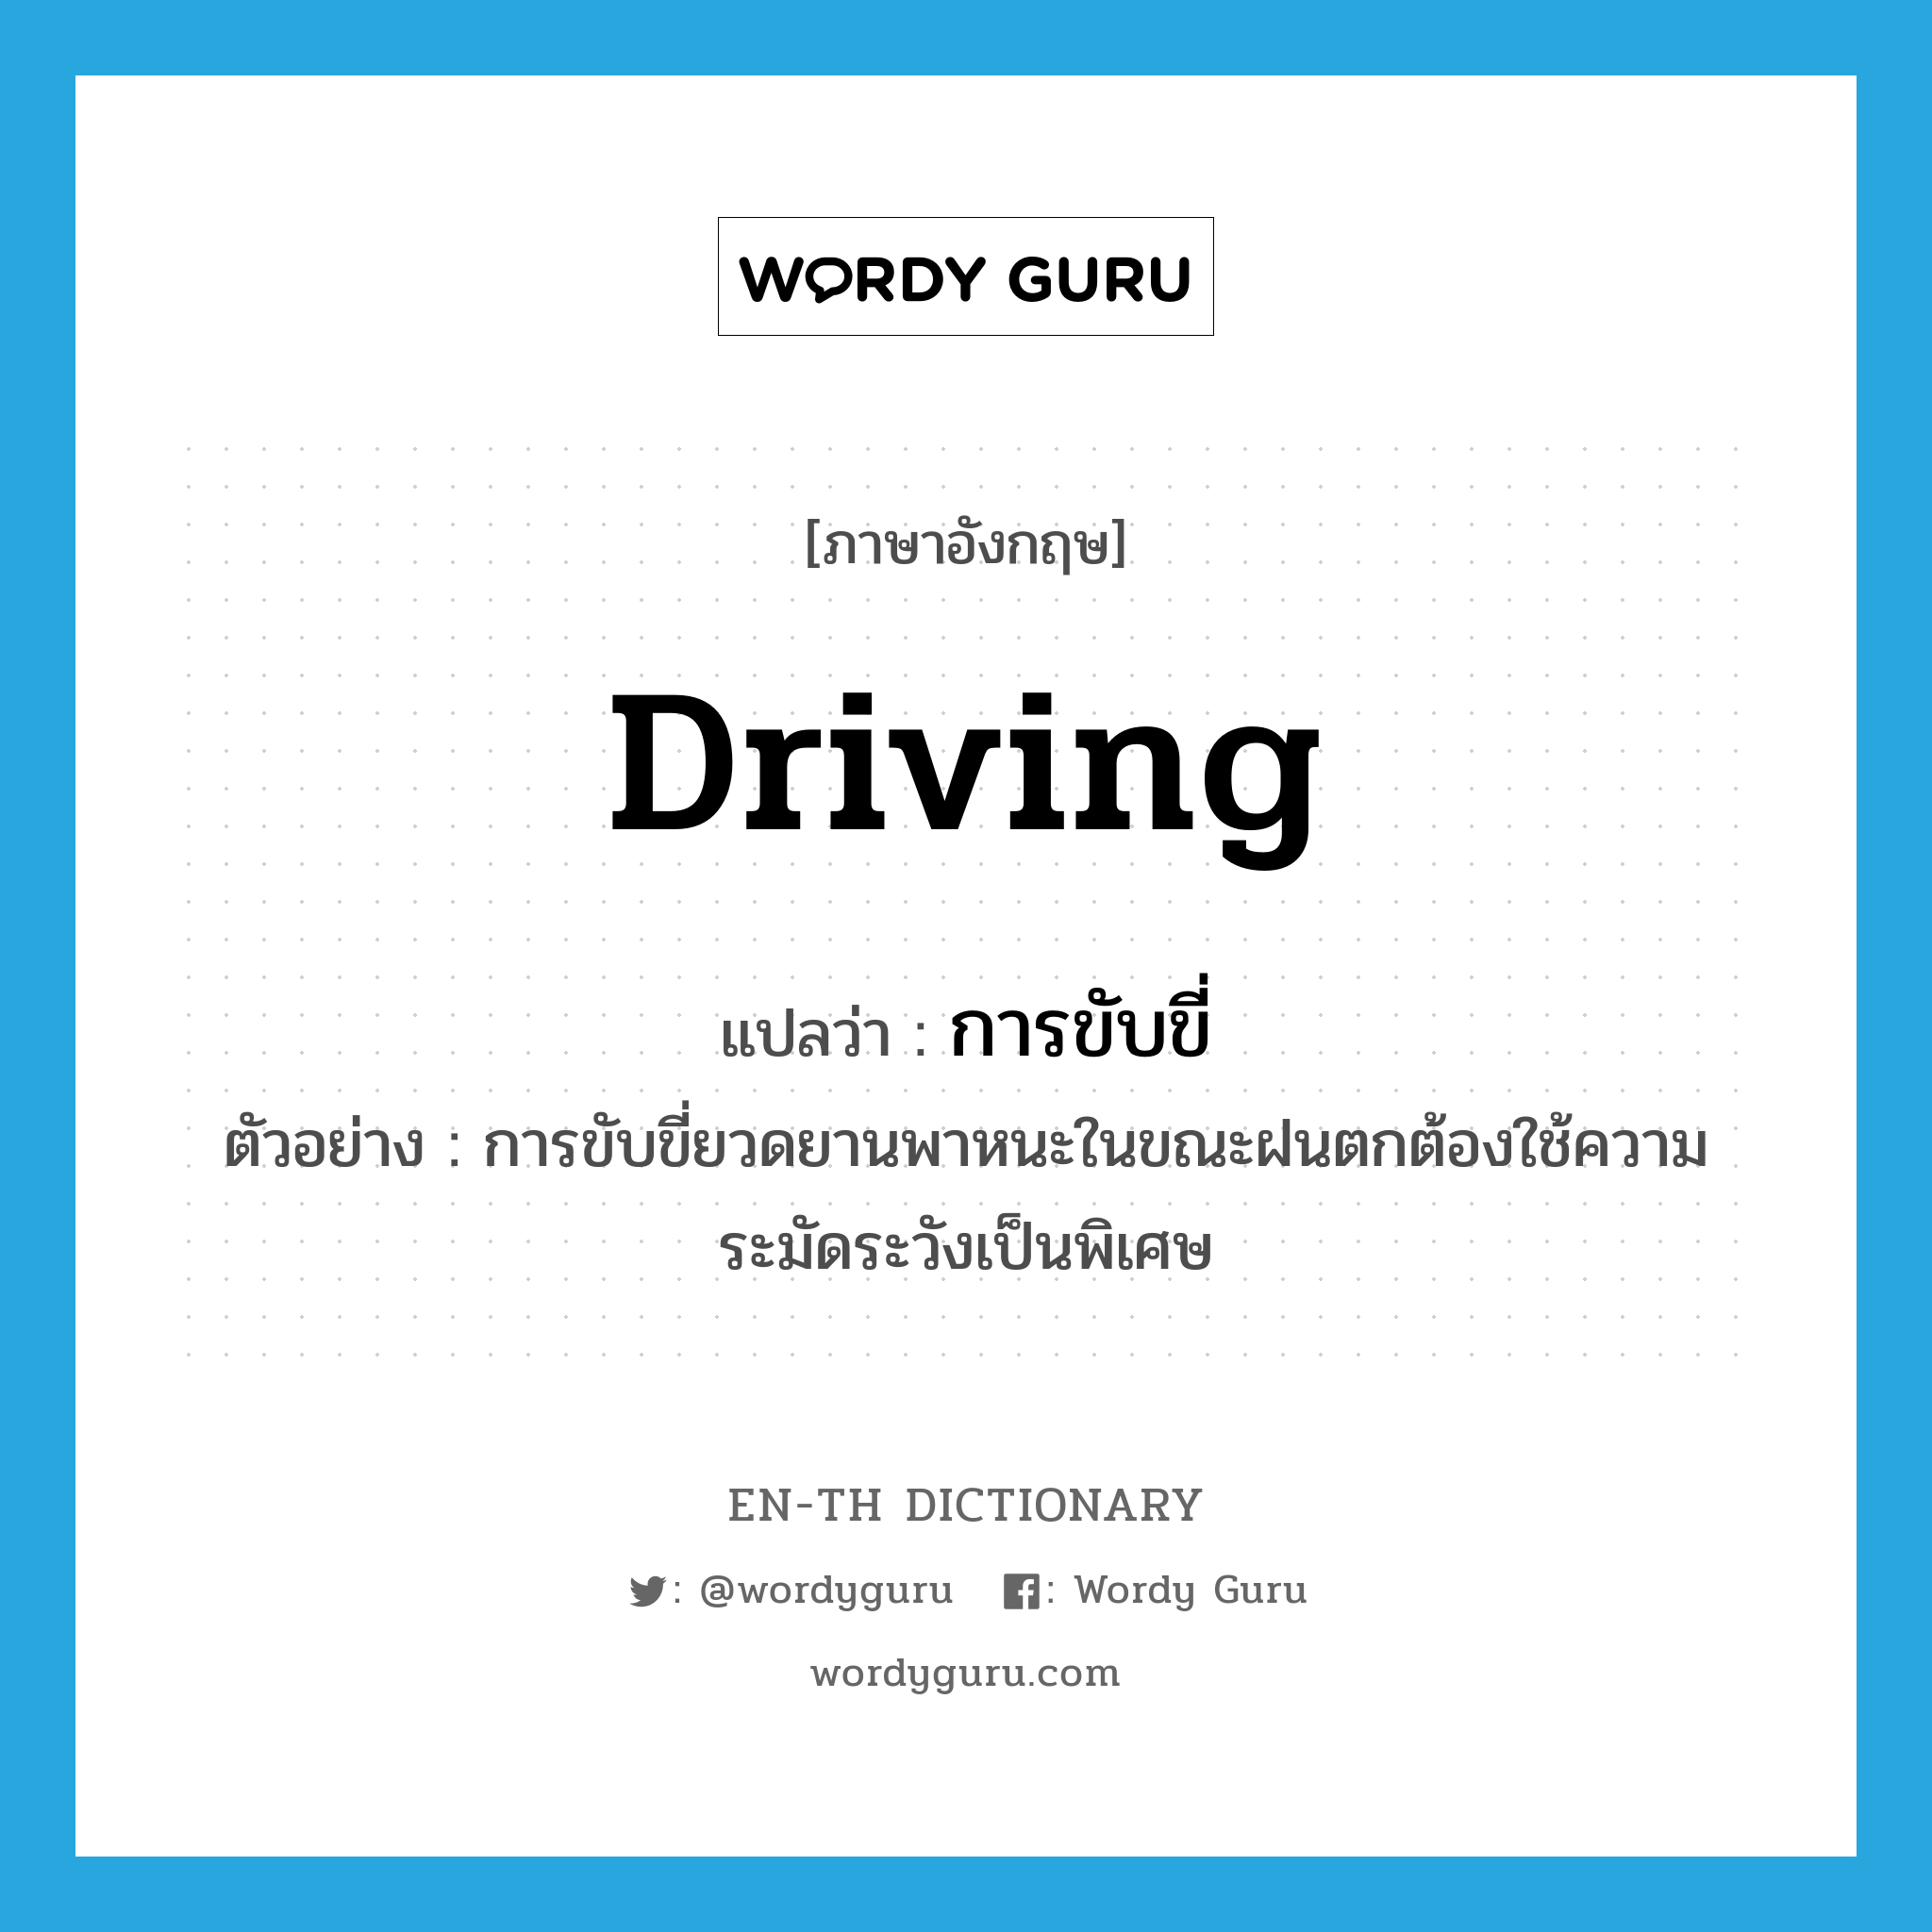 การขับขี่ ภาษาอังกฤษ?, คำศัพท์ภาษาอังกฤษ การขับขี่ แปลว่า driving ประเภท N ตัวอย่าง การขับขี่ยวดยานพาหนะในขณะฝนตกต้องใช้ความระมัดระวังเป็นพิเศษ หมวด N